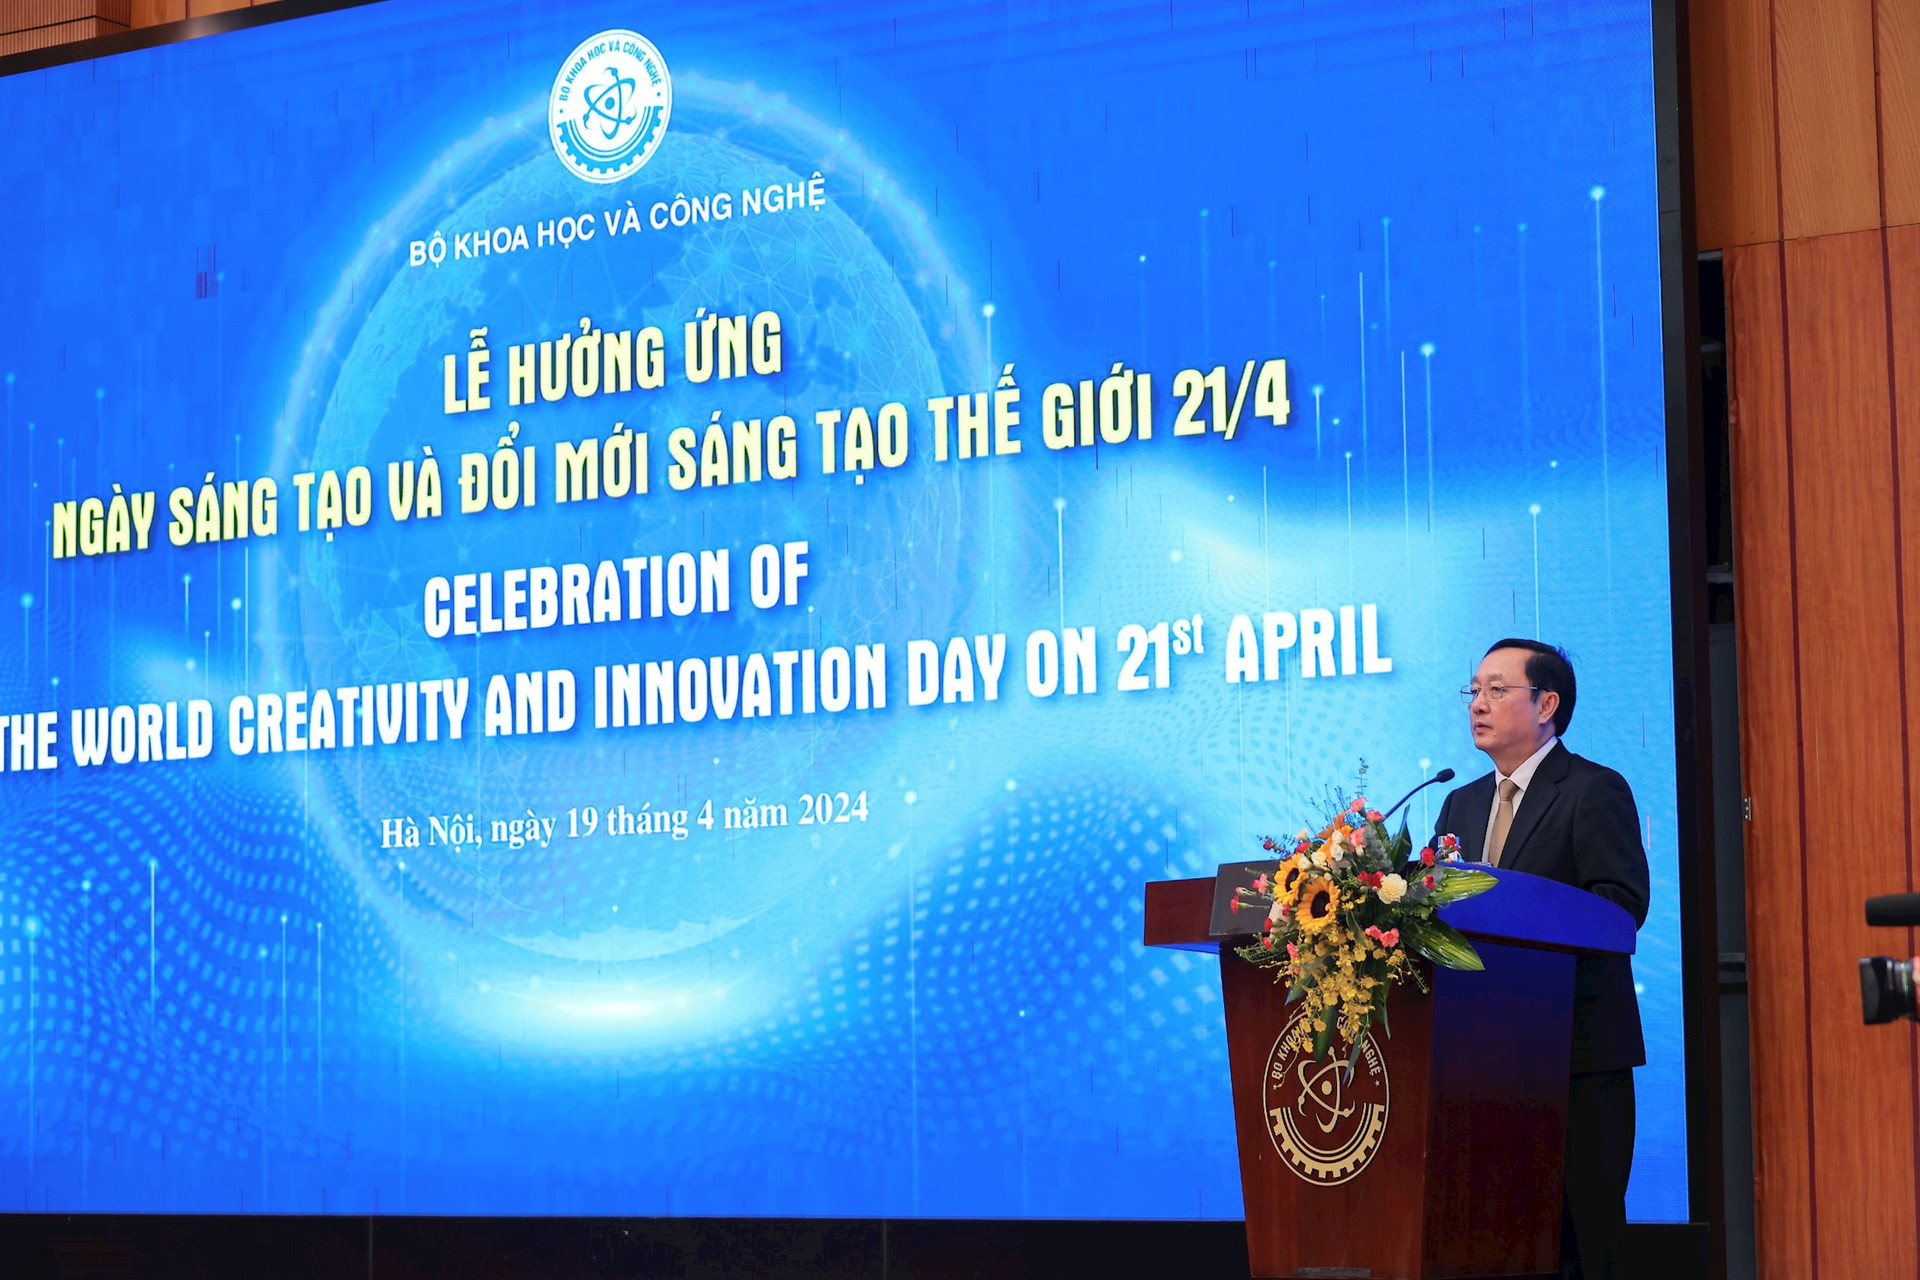 Bộ trưởng Bộ Khoa học và Công nghệ Huỳnh Thành Đạt phát biểu tại buổi lễ. Ảnh: BTC